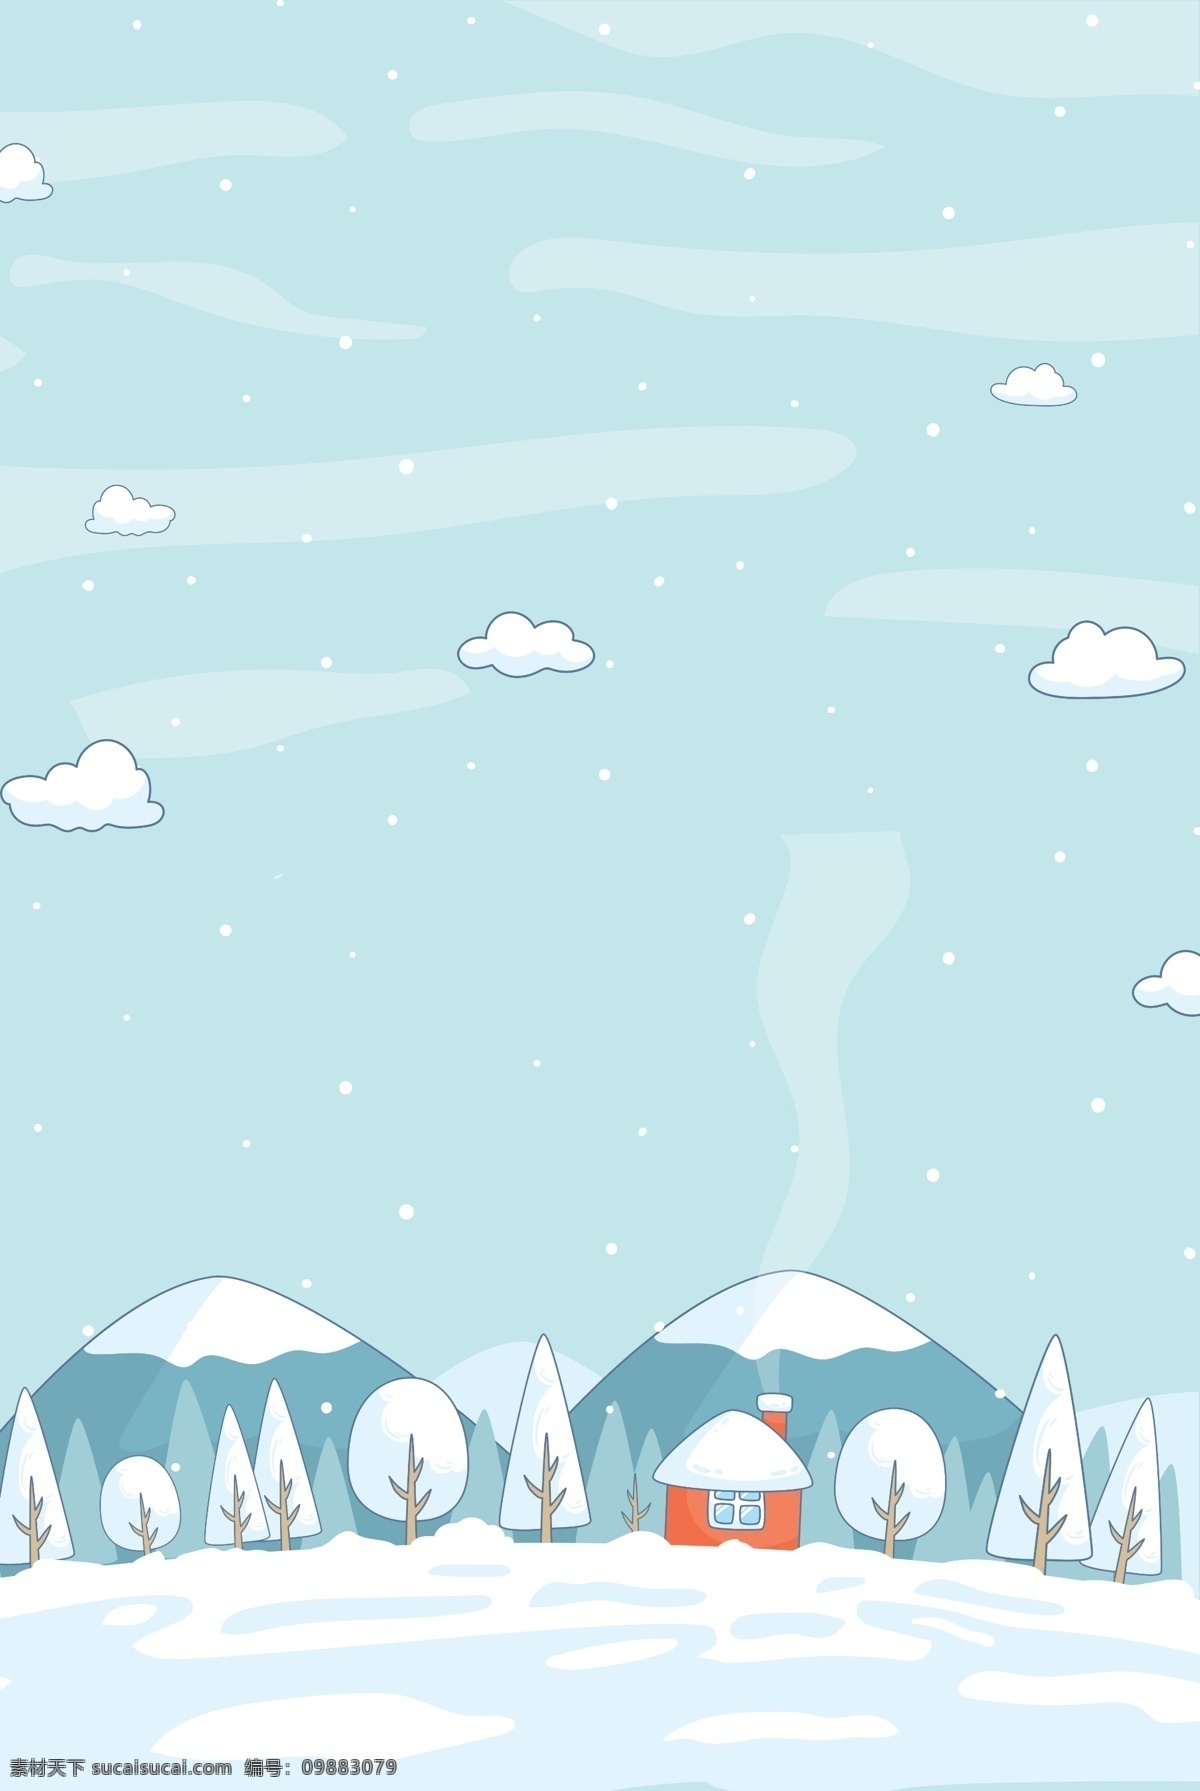 二十四节气 小雪 插画 背景 冬至 下雪 雪花 背景设计 冬天 大雪背景